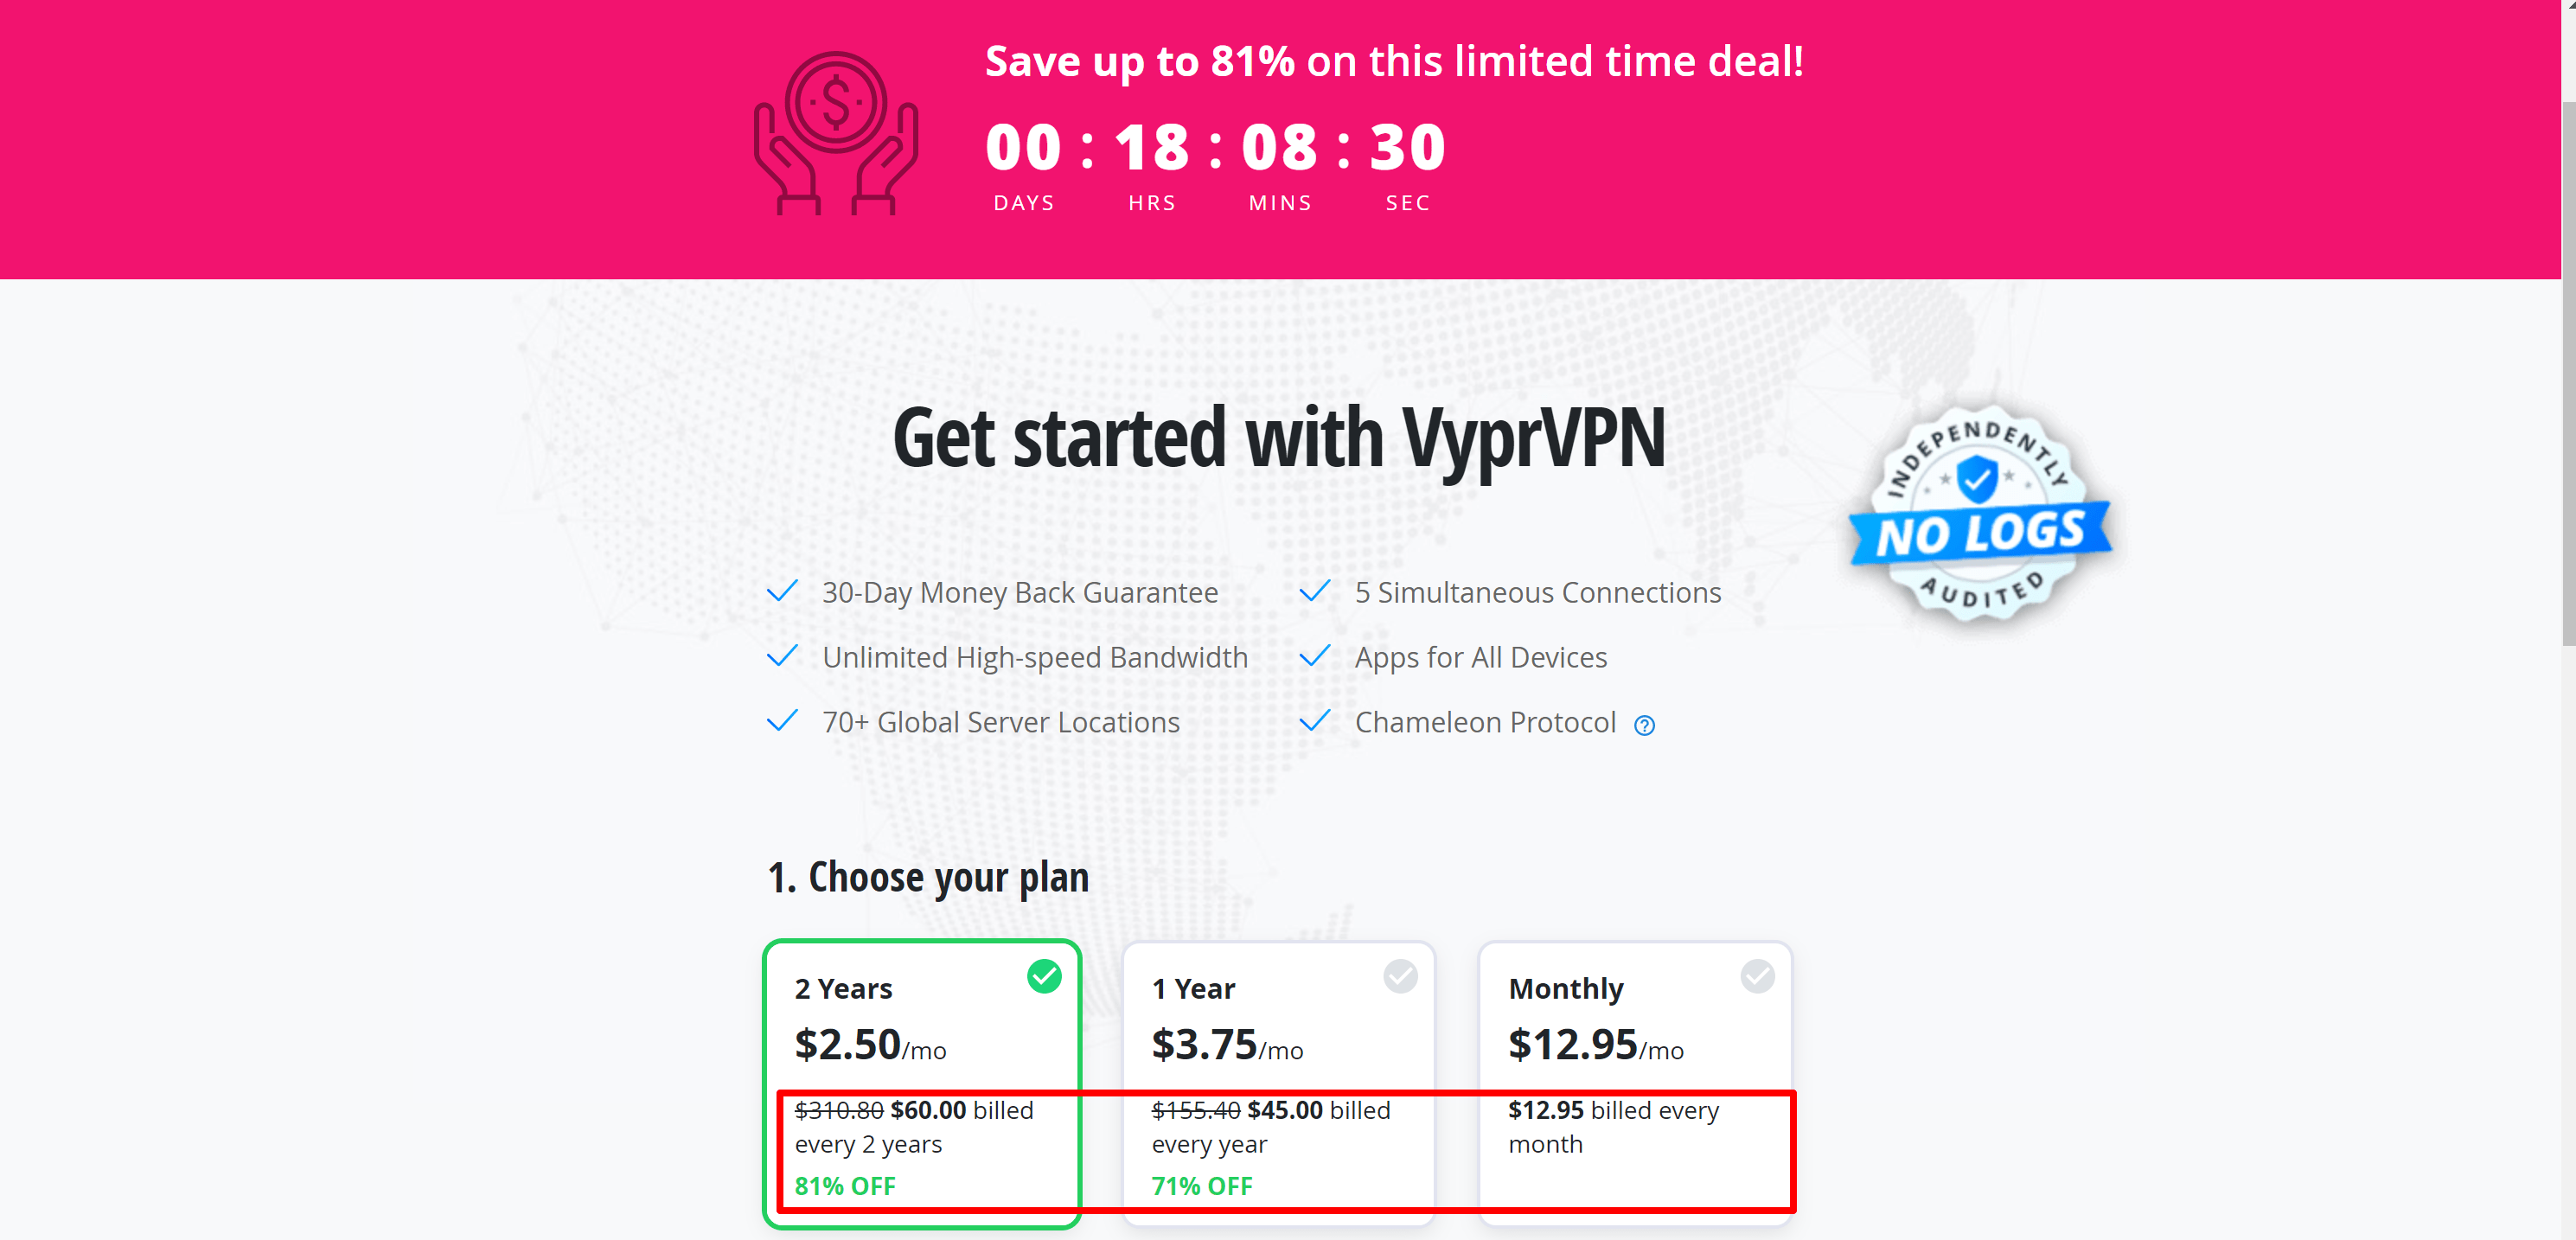 VyprVPN limited discount deal offer - Get started with VyprVpn